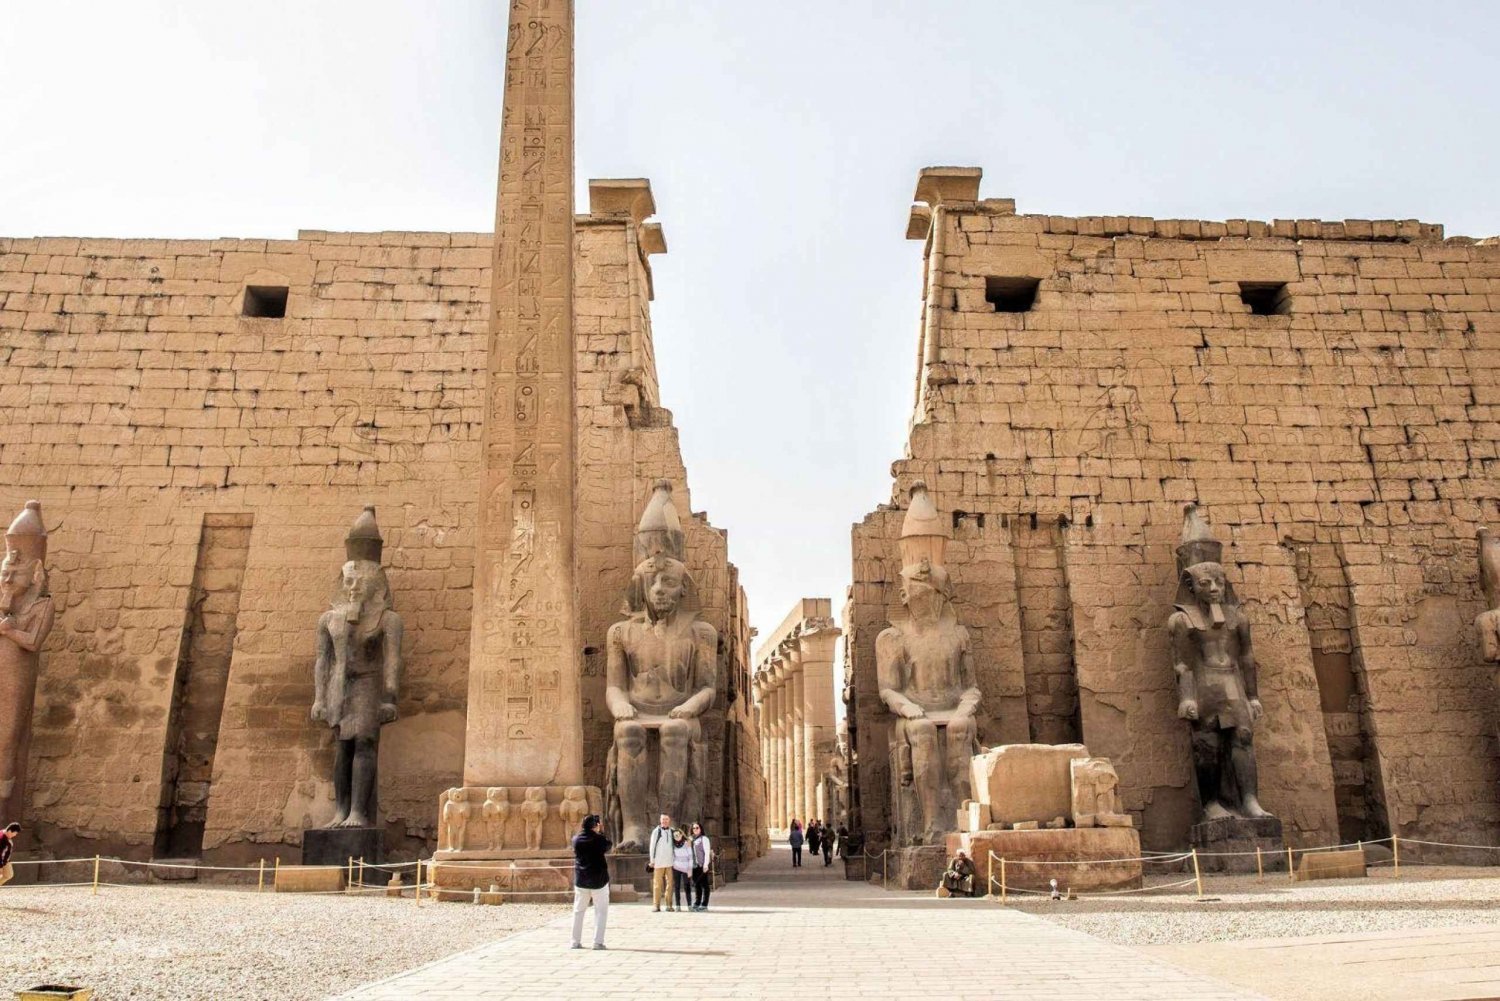 2 días 1 noche Luxor,Asuán y Abu simbel en vuelo desde El Cairo